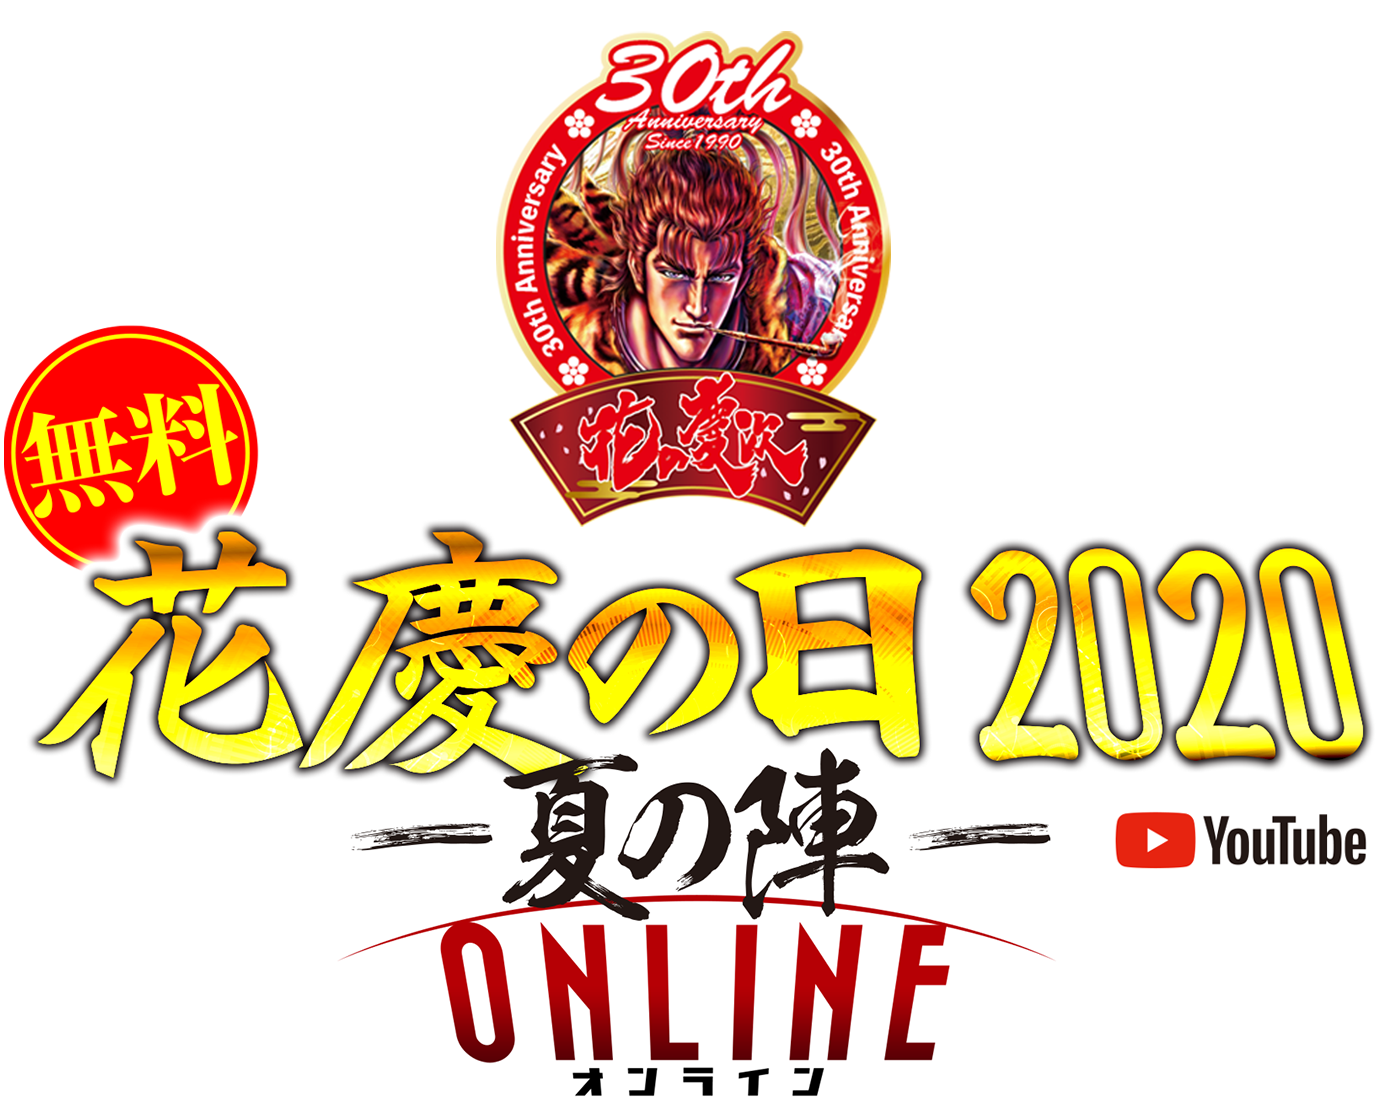 花慶の日 2020 -夏の陣- ONLINE いざ参らん!共に新たな戦さ場へ!!